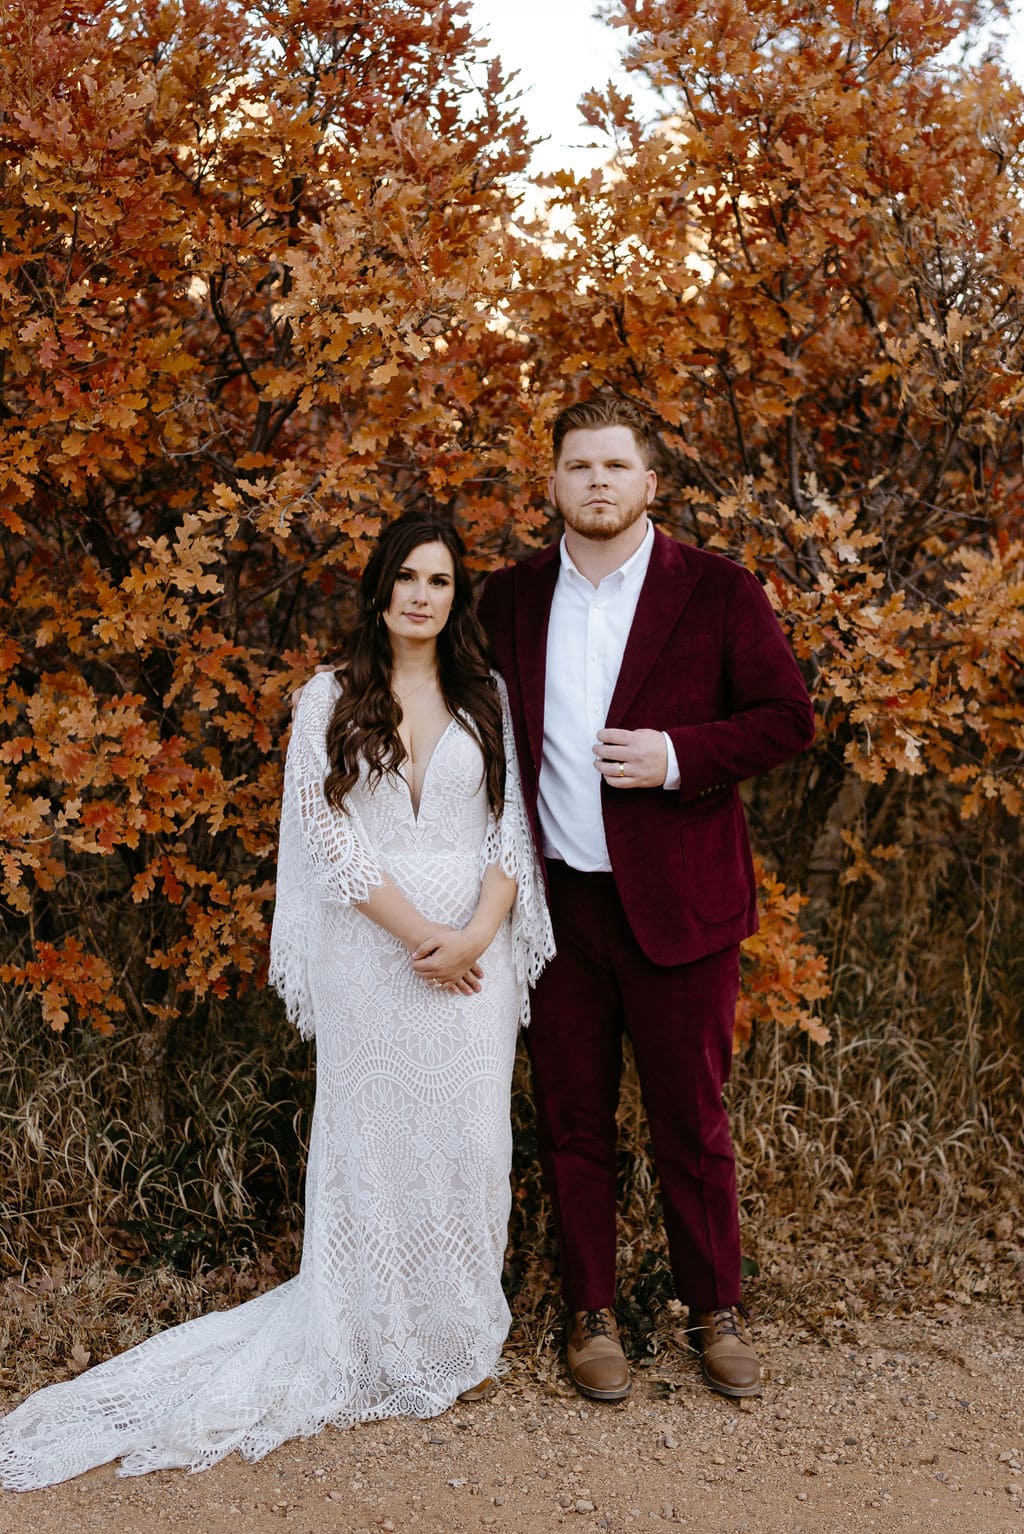 Spooky Fall Wedding in Colorado